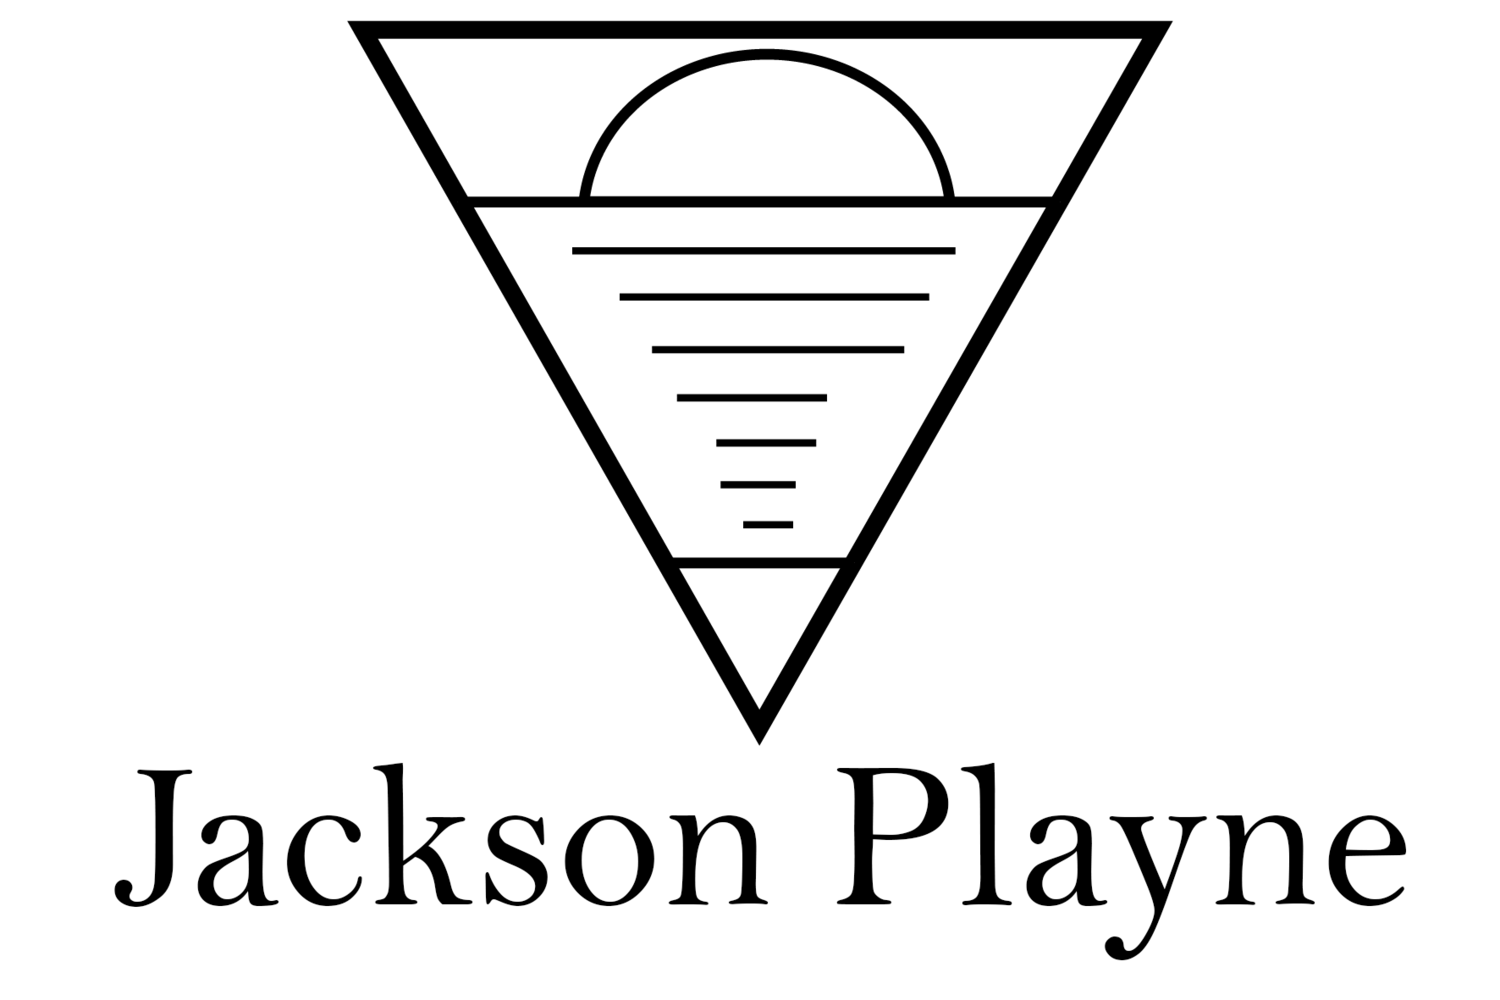 Jackson Playne